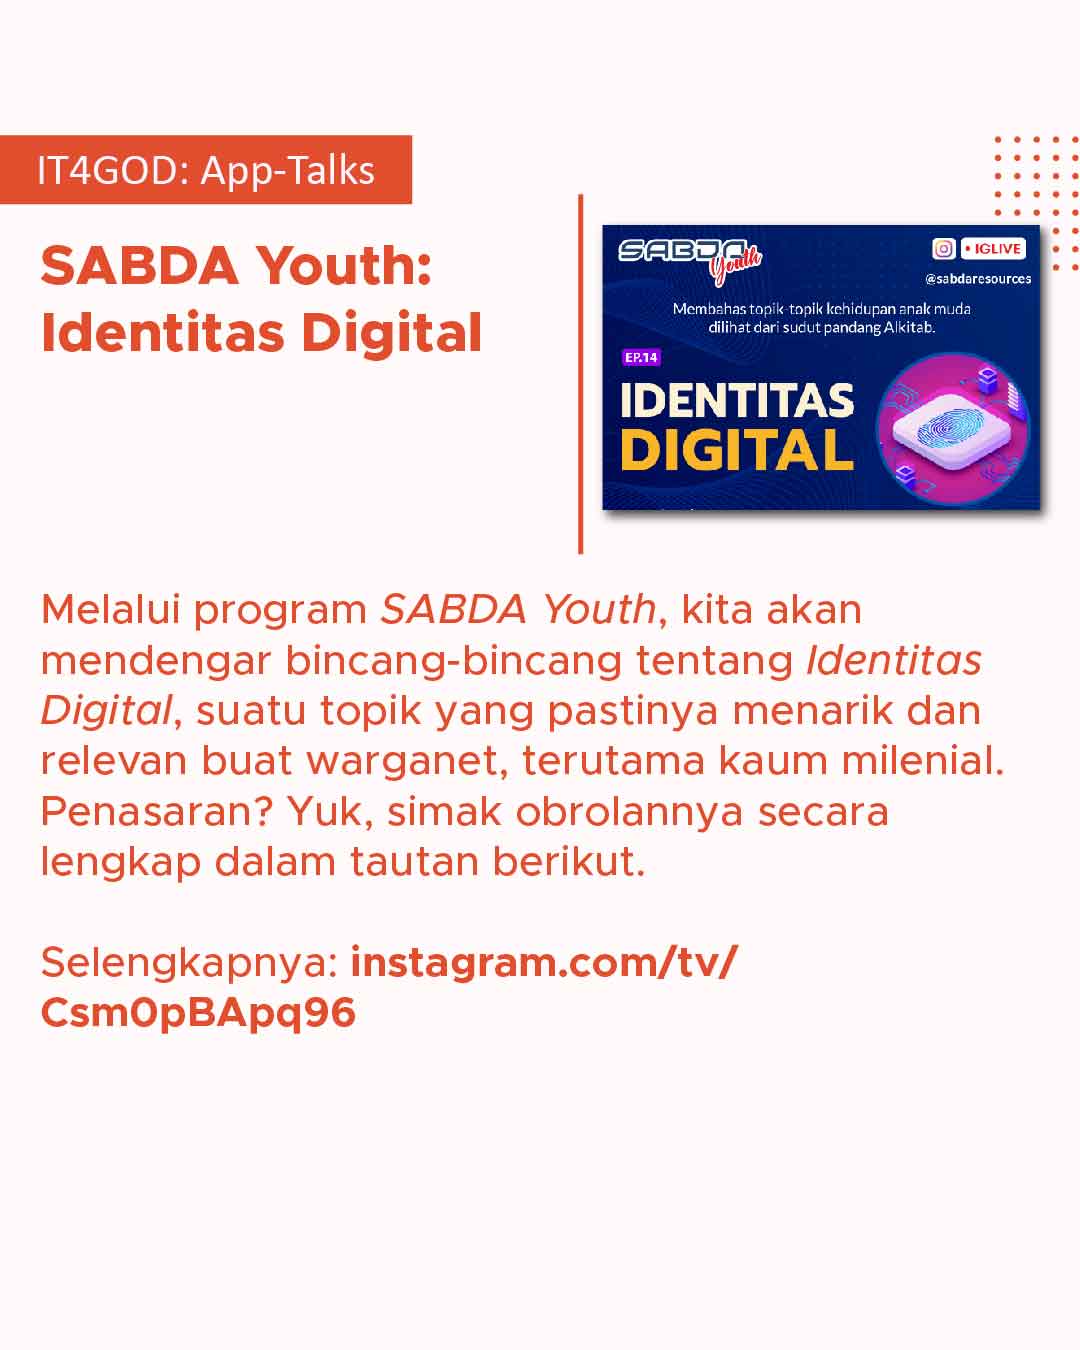 Bincang-bincang tentang Identitas Digital melalui program SABDA Youth.